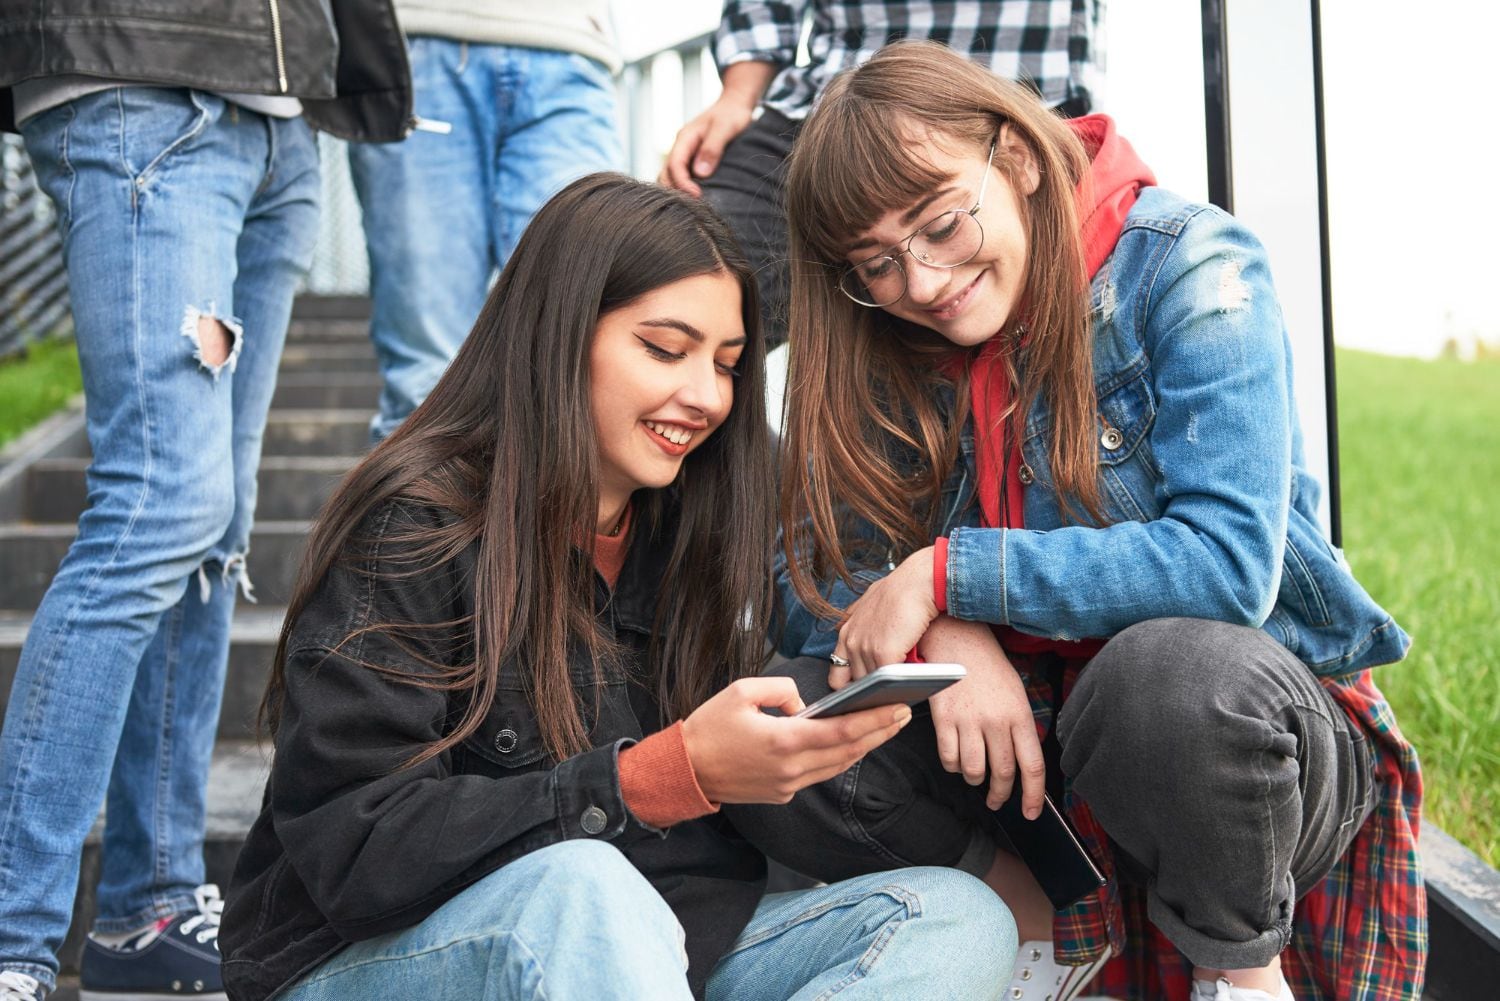 Los adolescentes usan internet 3 horas al día para actividades de ocio, según el estudio - crédito Freepik